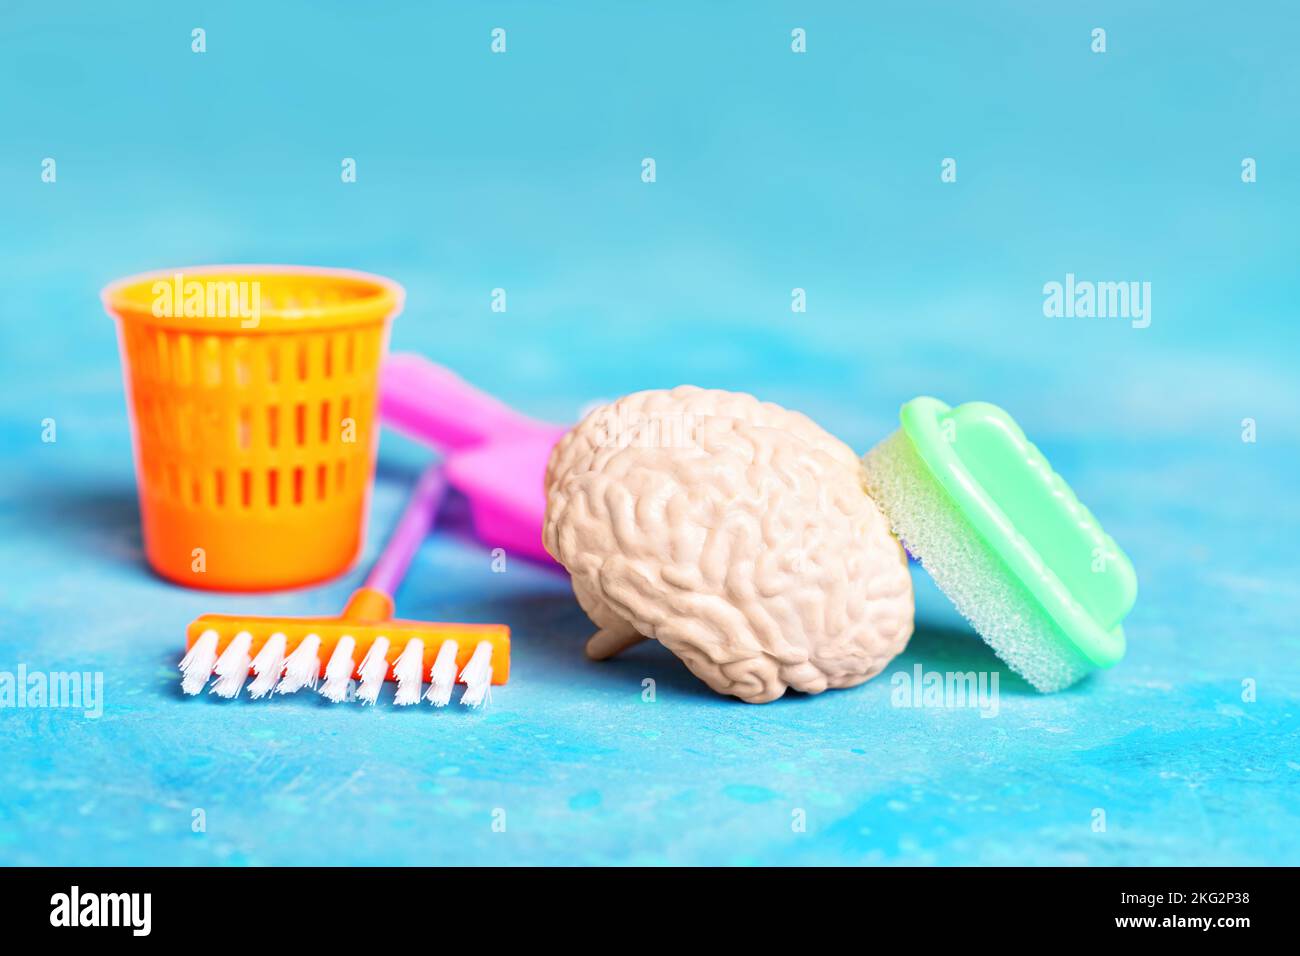 Cervello umano e giocattolo casa strumenti di pulizia disposti su sfondo blu. Concetto di pulizia profonda della mente. Foto Stock